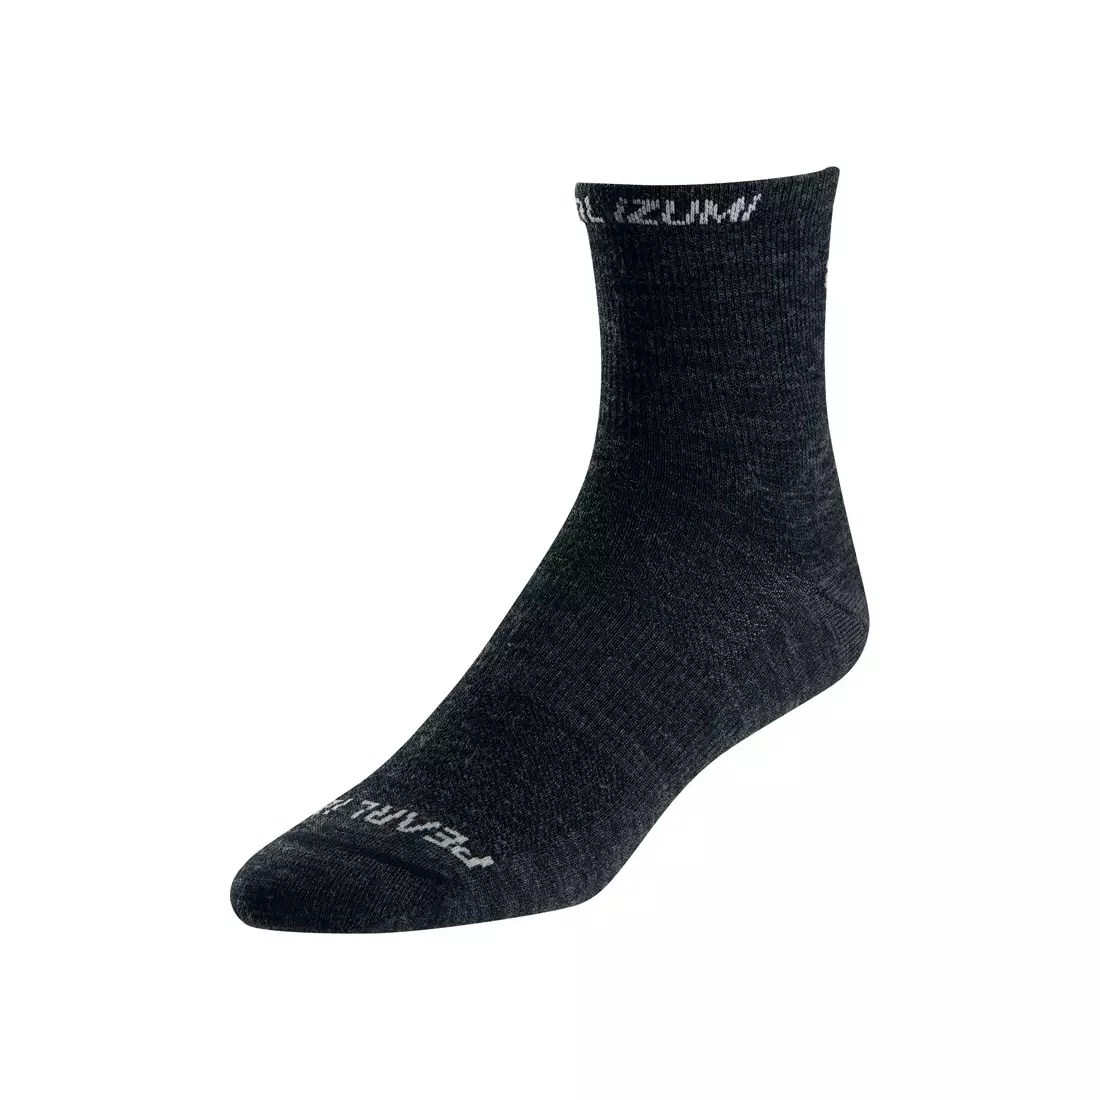 PEARL IZUMI ELITE WOOL universal sports socks 14151510021